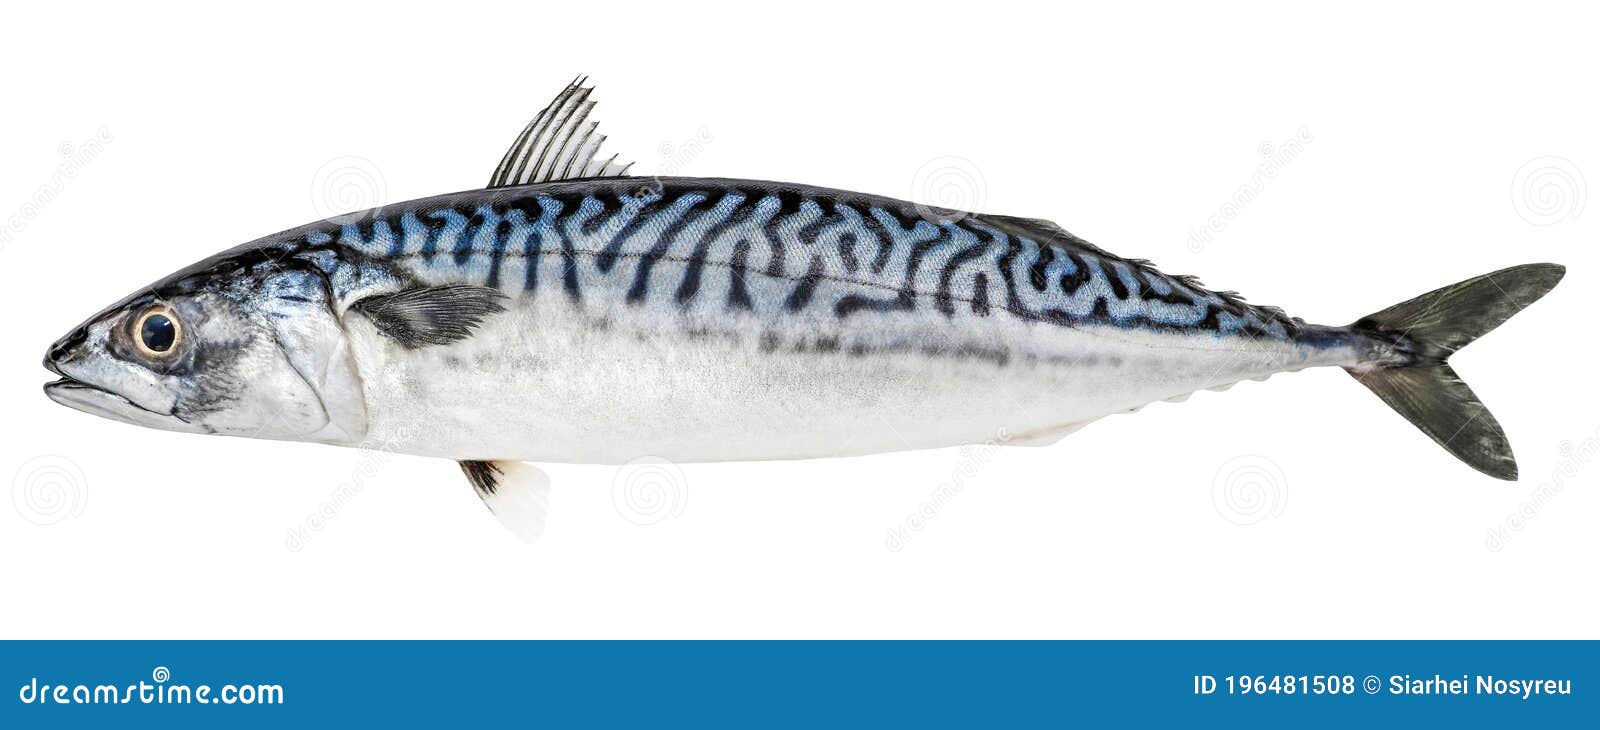 Atlantic Mackerel Fish Isolated on White Background Stock Photo - Image of  bass, fresh: 196481508